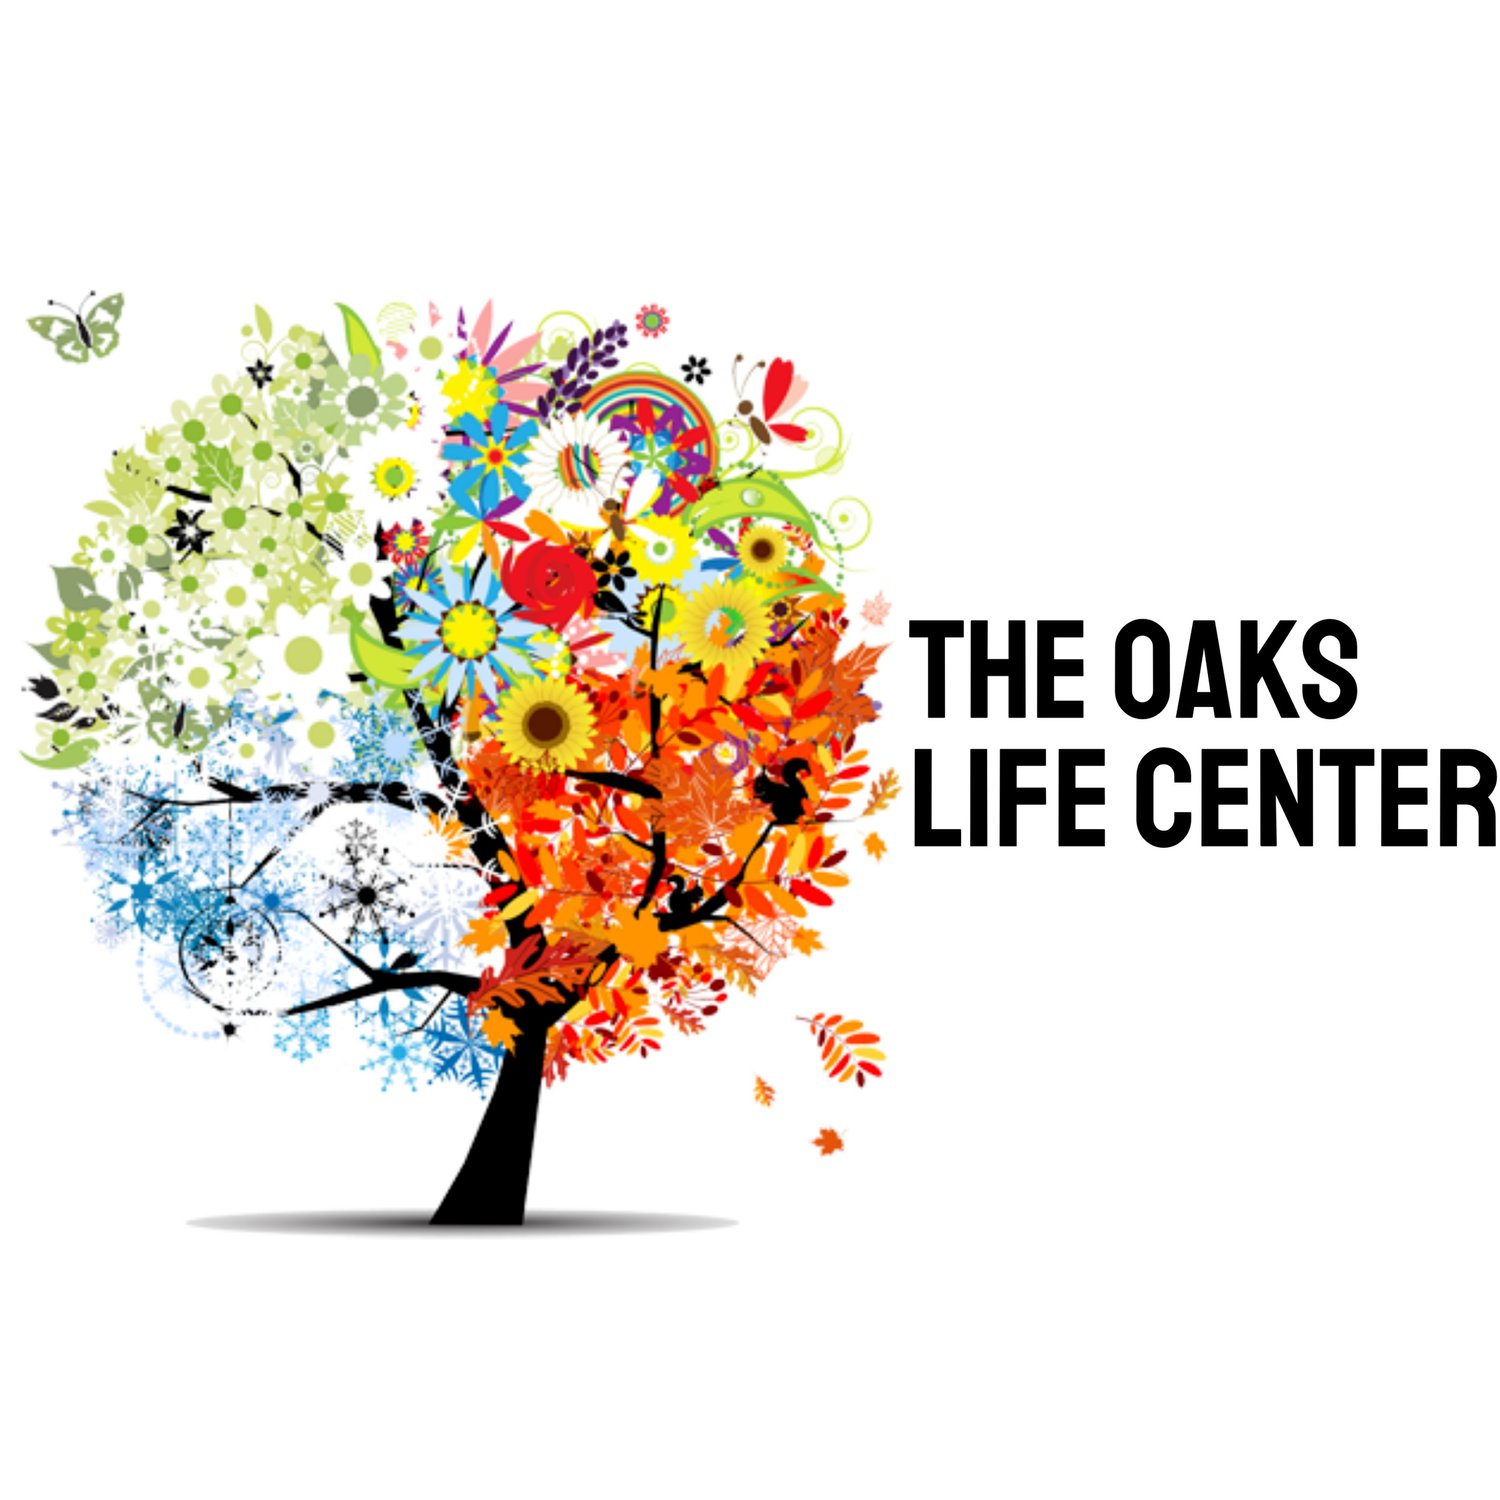 The Oaks Life Center